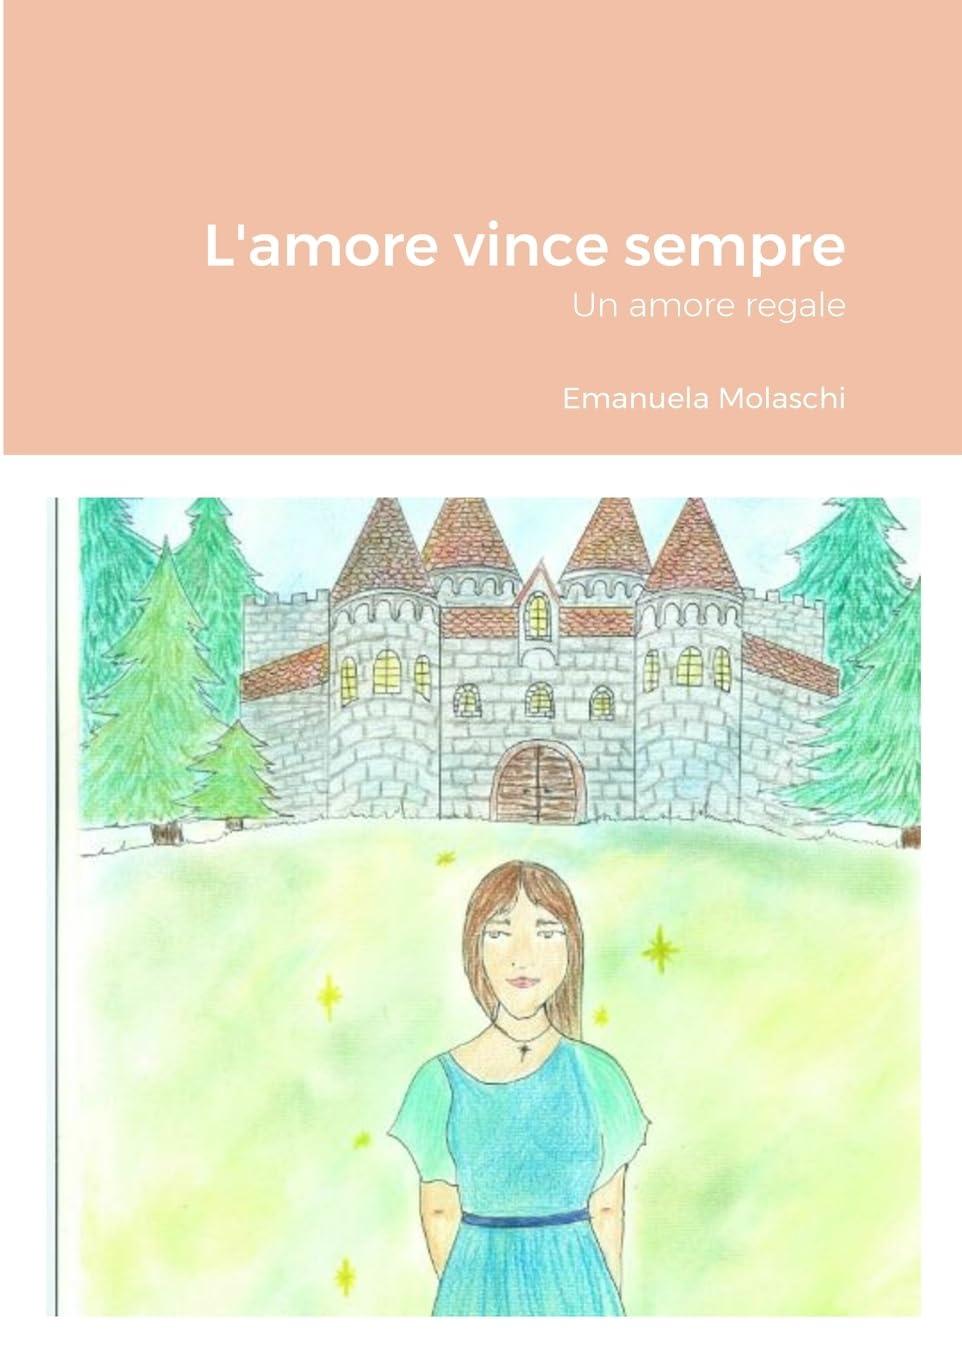 Libro "L'amore vince sempre: Un amore regale" di Emanuela Molaschi